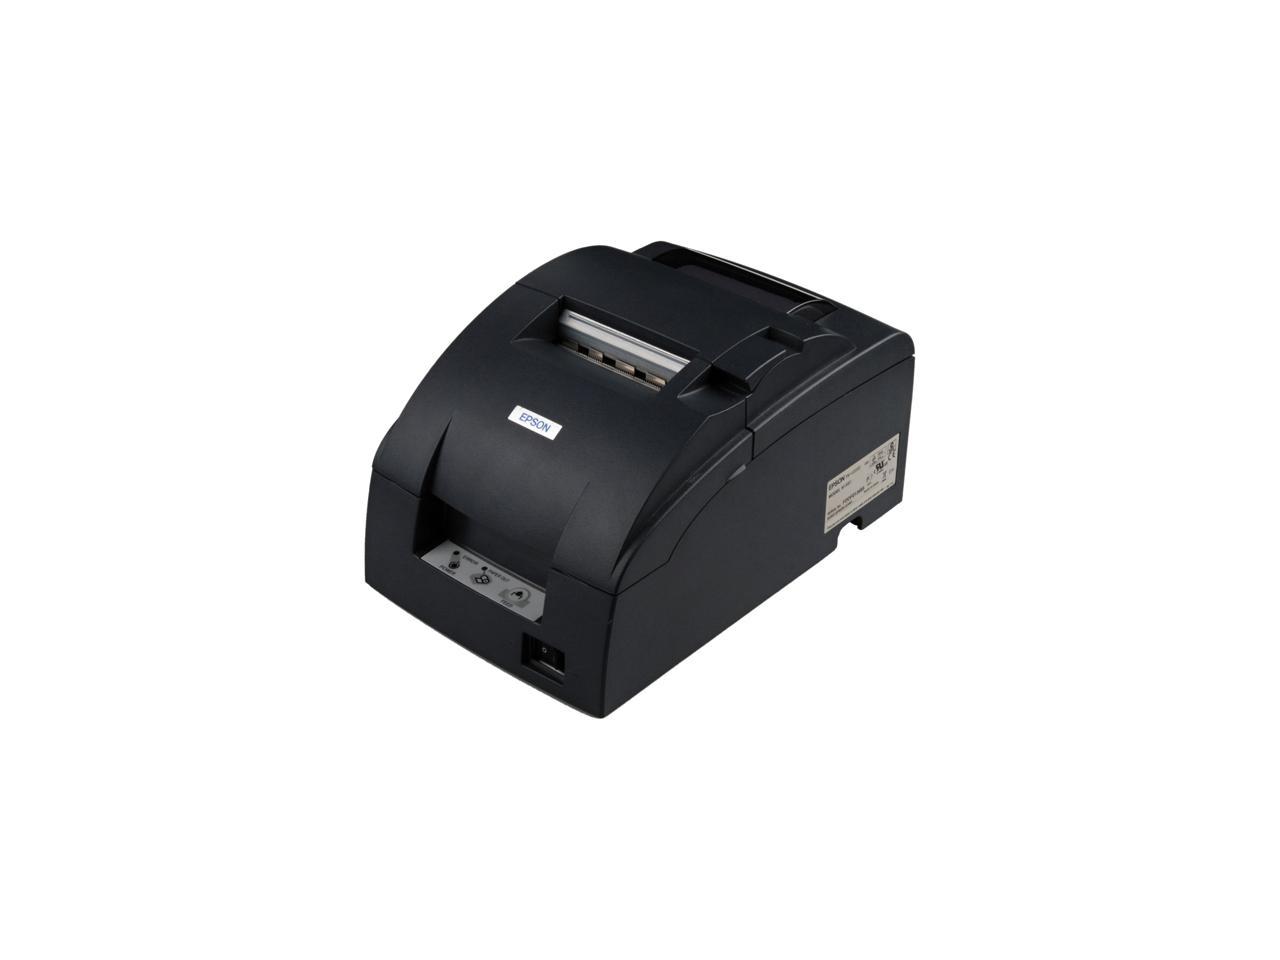 Epson TM-U220B Receipt/Kitchen Impact Printer with Auto Cutter - Dark Gray - C31C514A8541